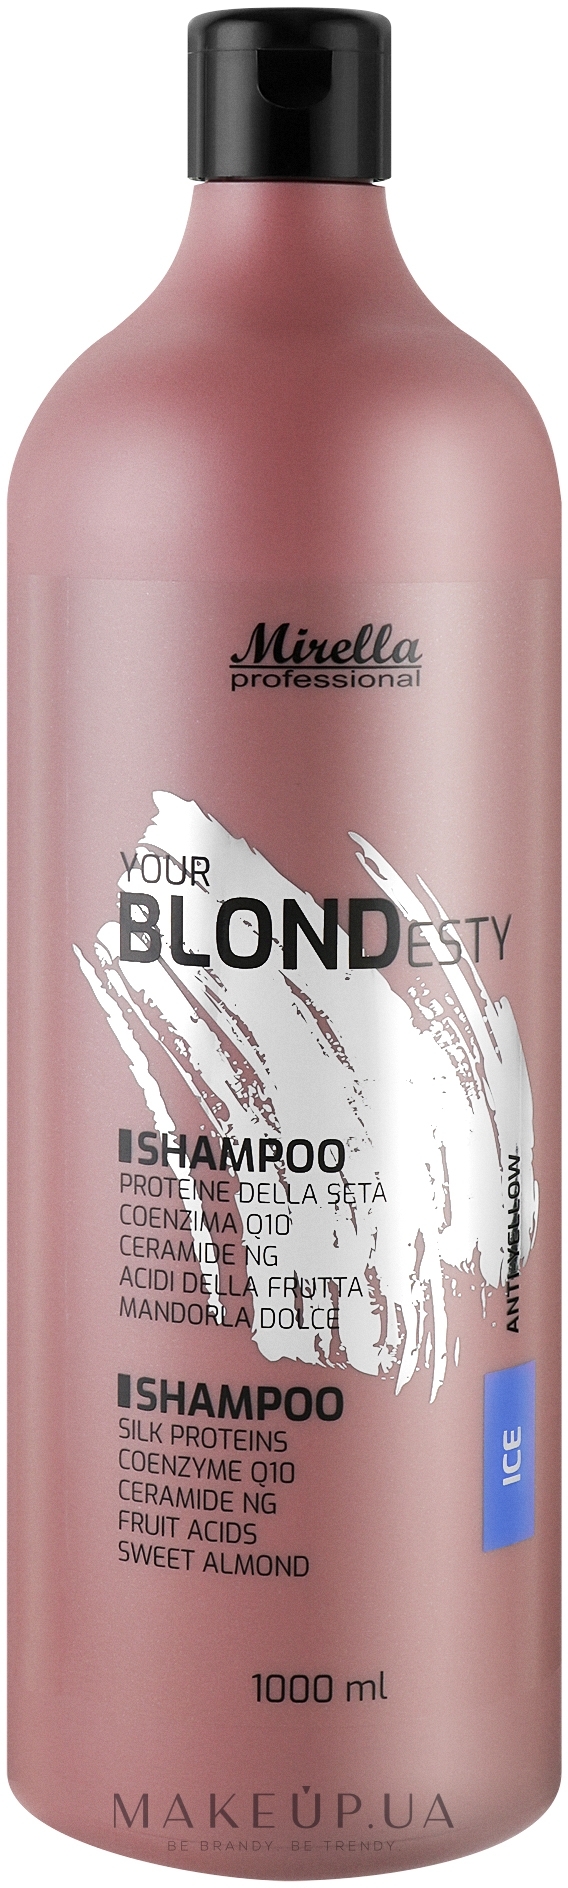 Шампунь для крижаних відтінків блонд - Mirella Ice Your Blondesty Shampoo — фото 1000ml